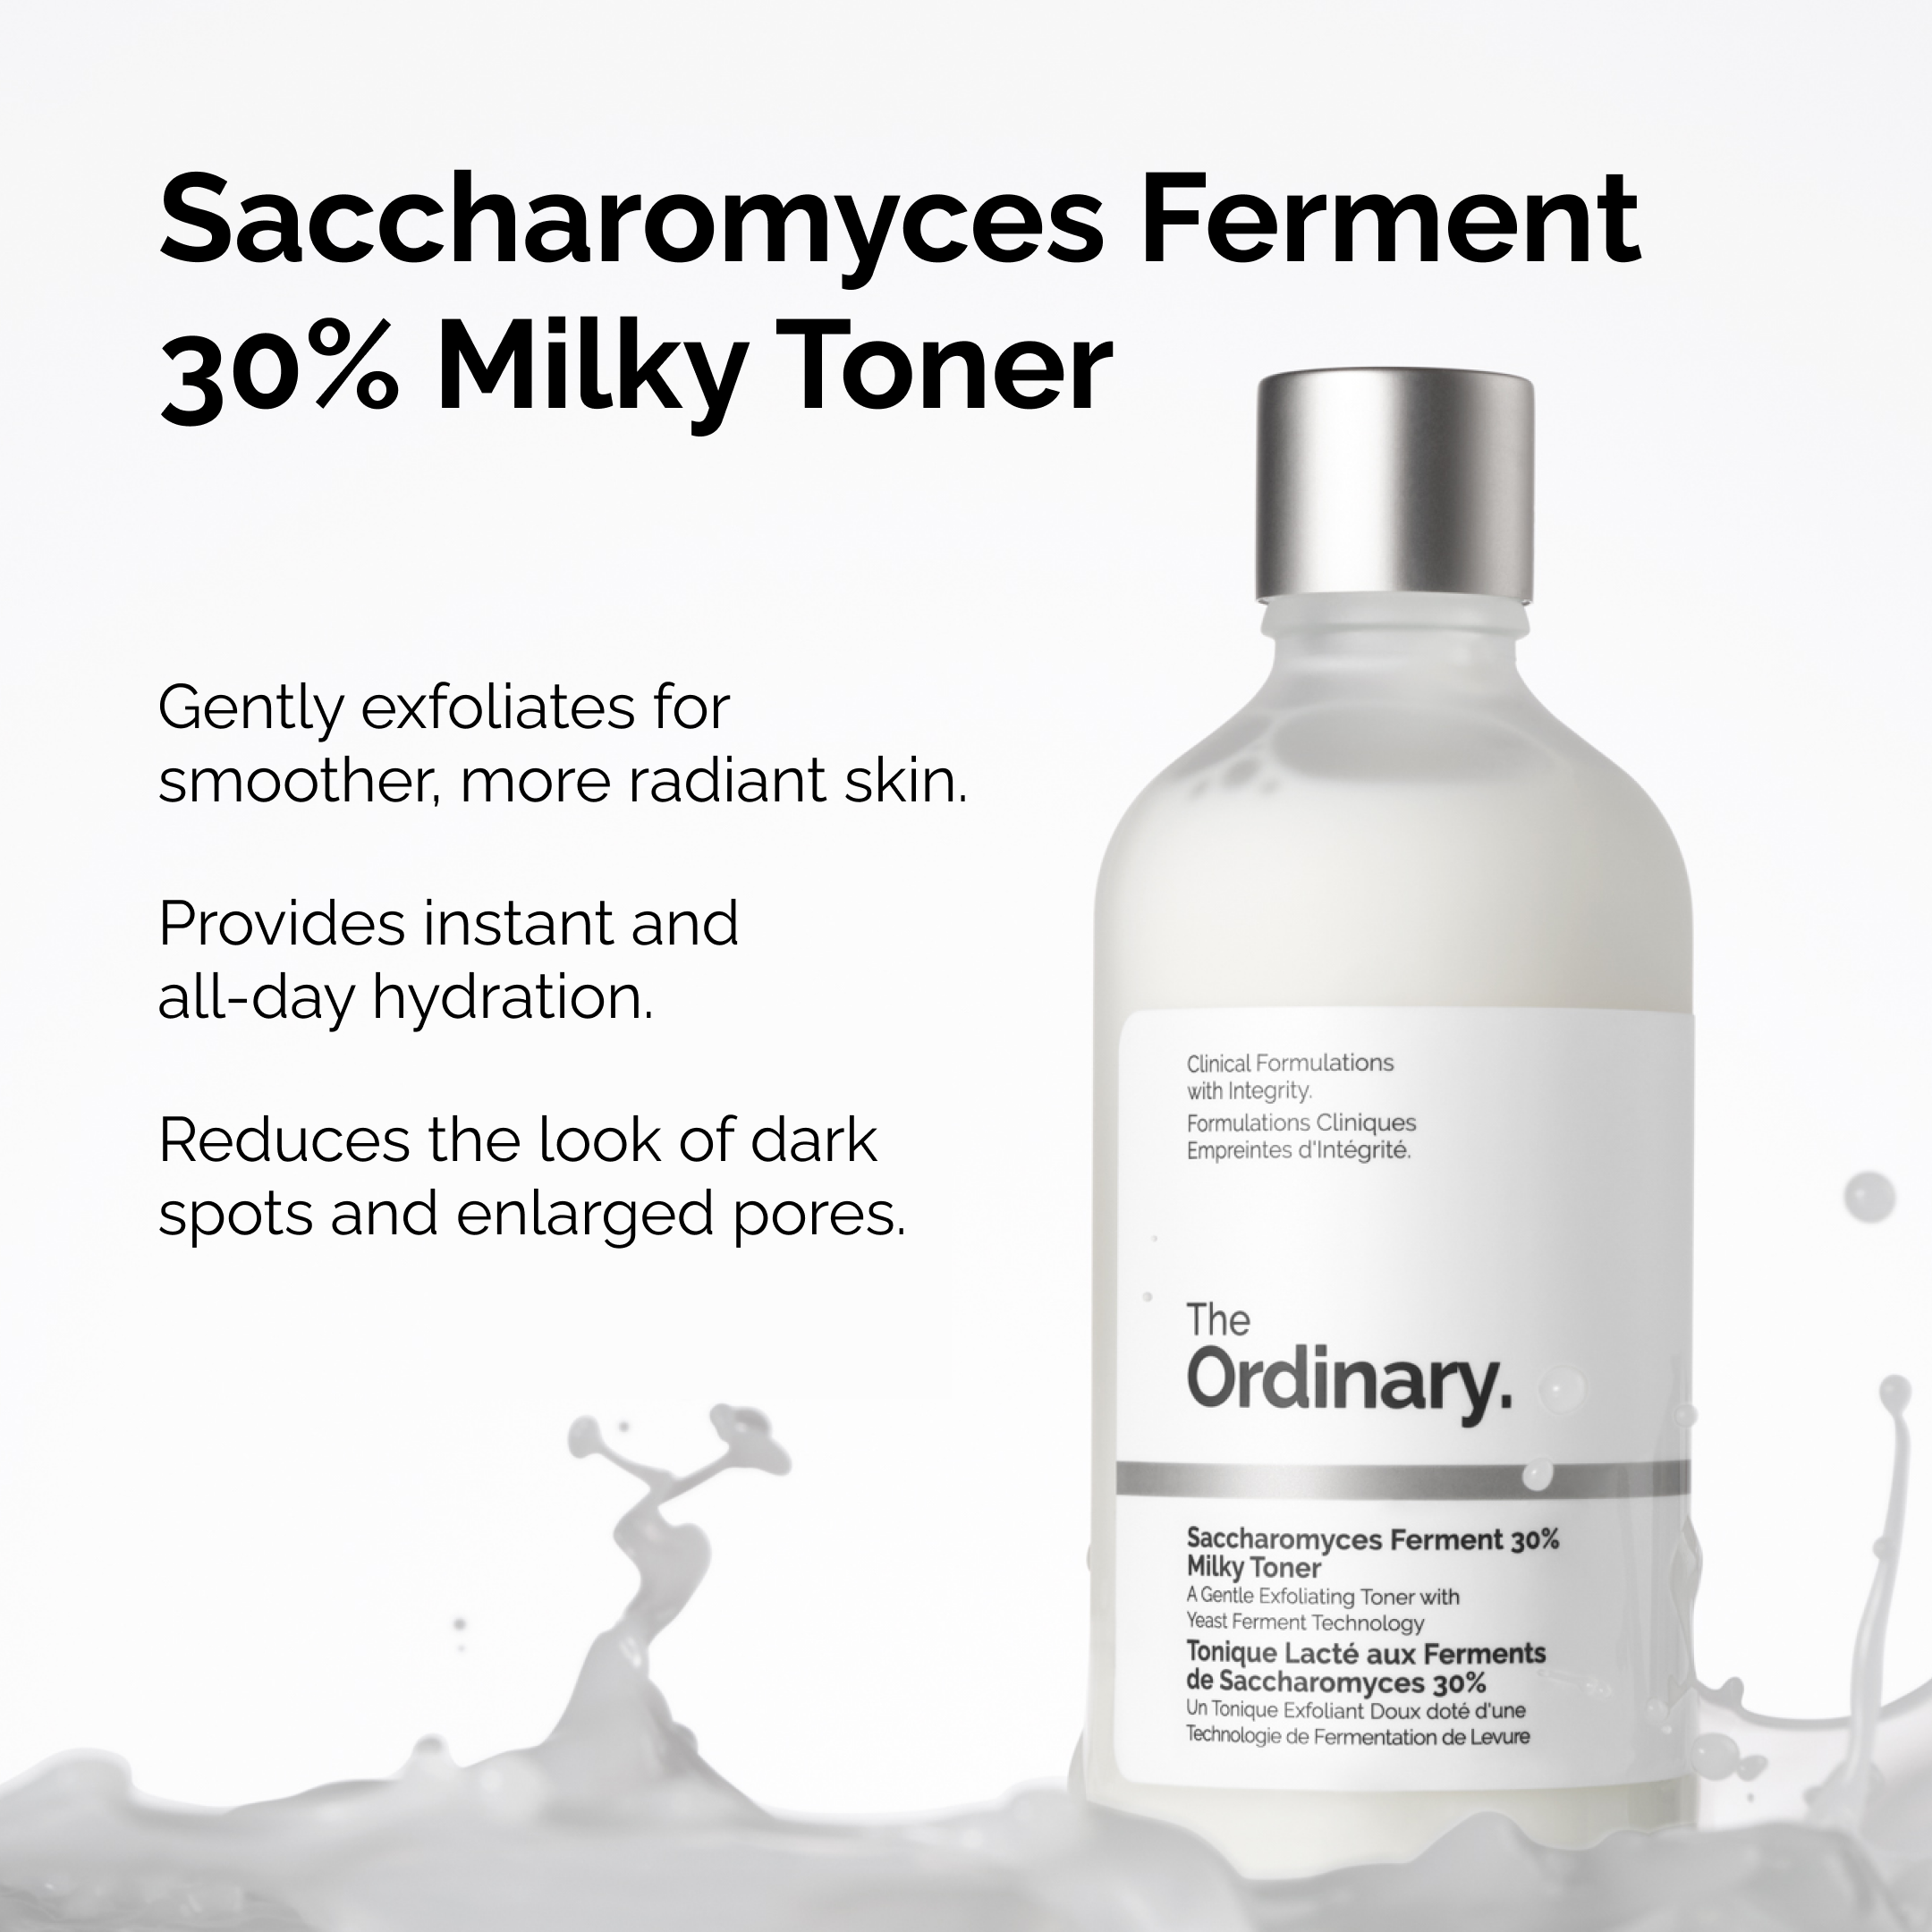 Saccharomyces Ferment 30% Milky Toner